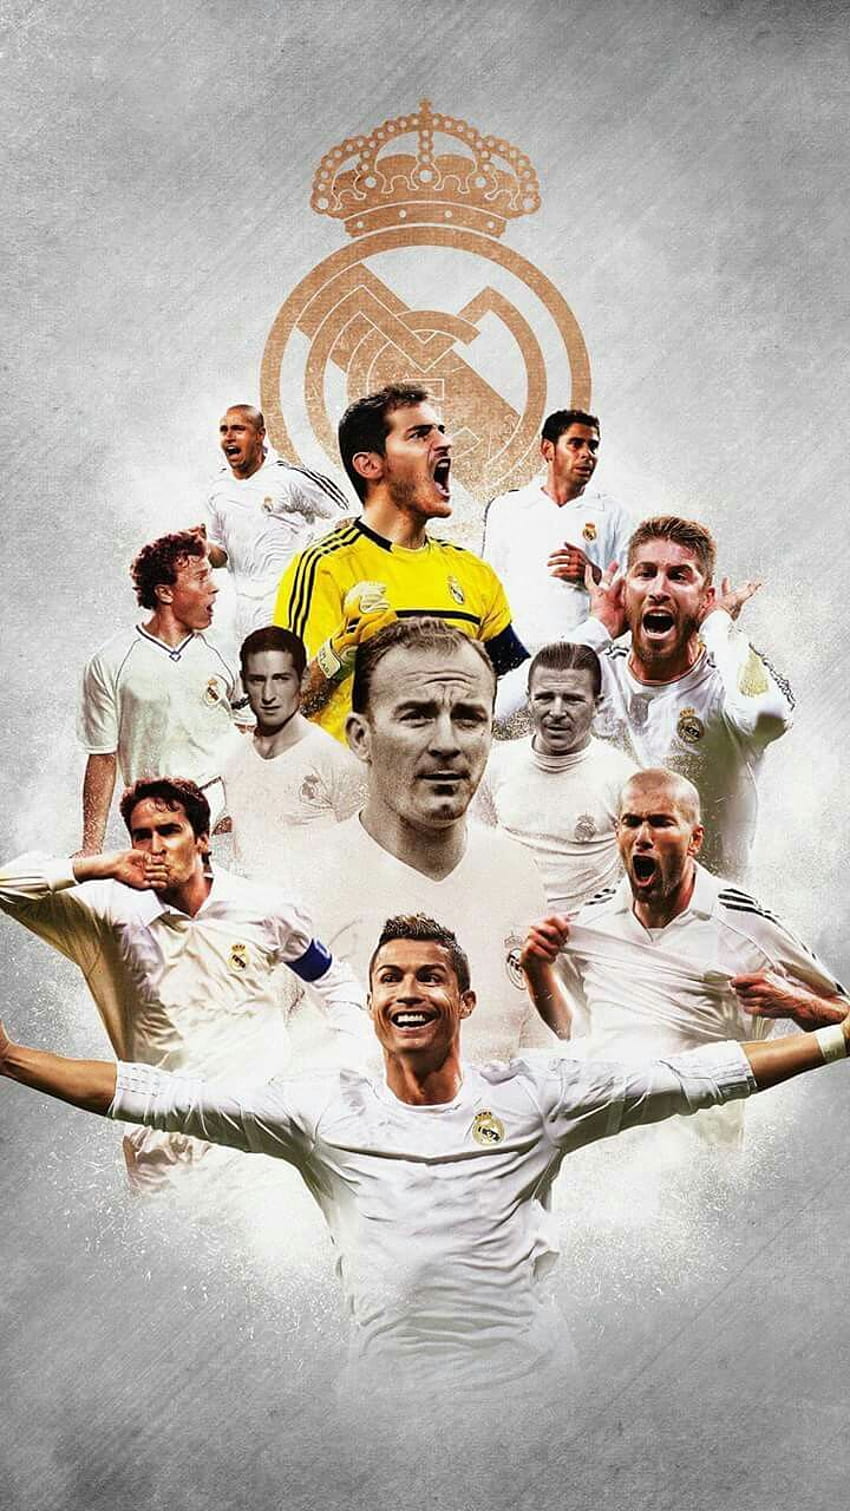 Real Madrid wallpaper  Real madrid wallpapers, Real madrid team